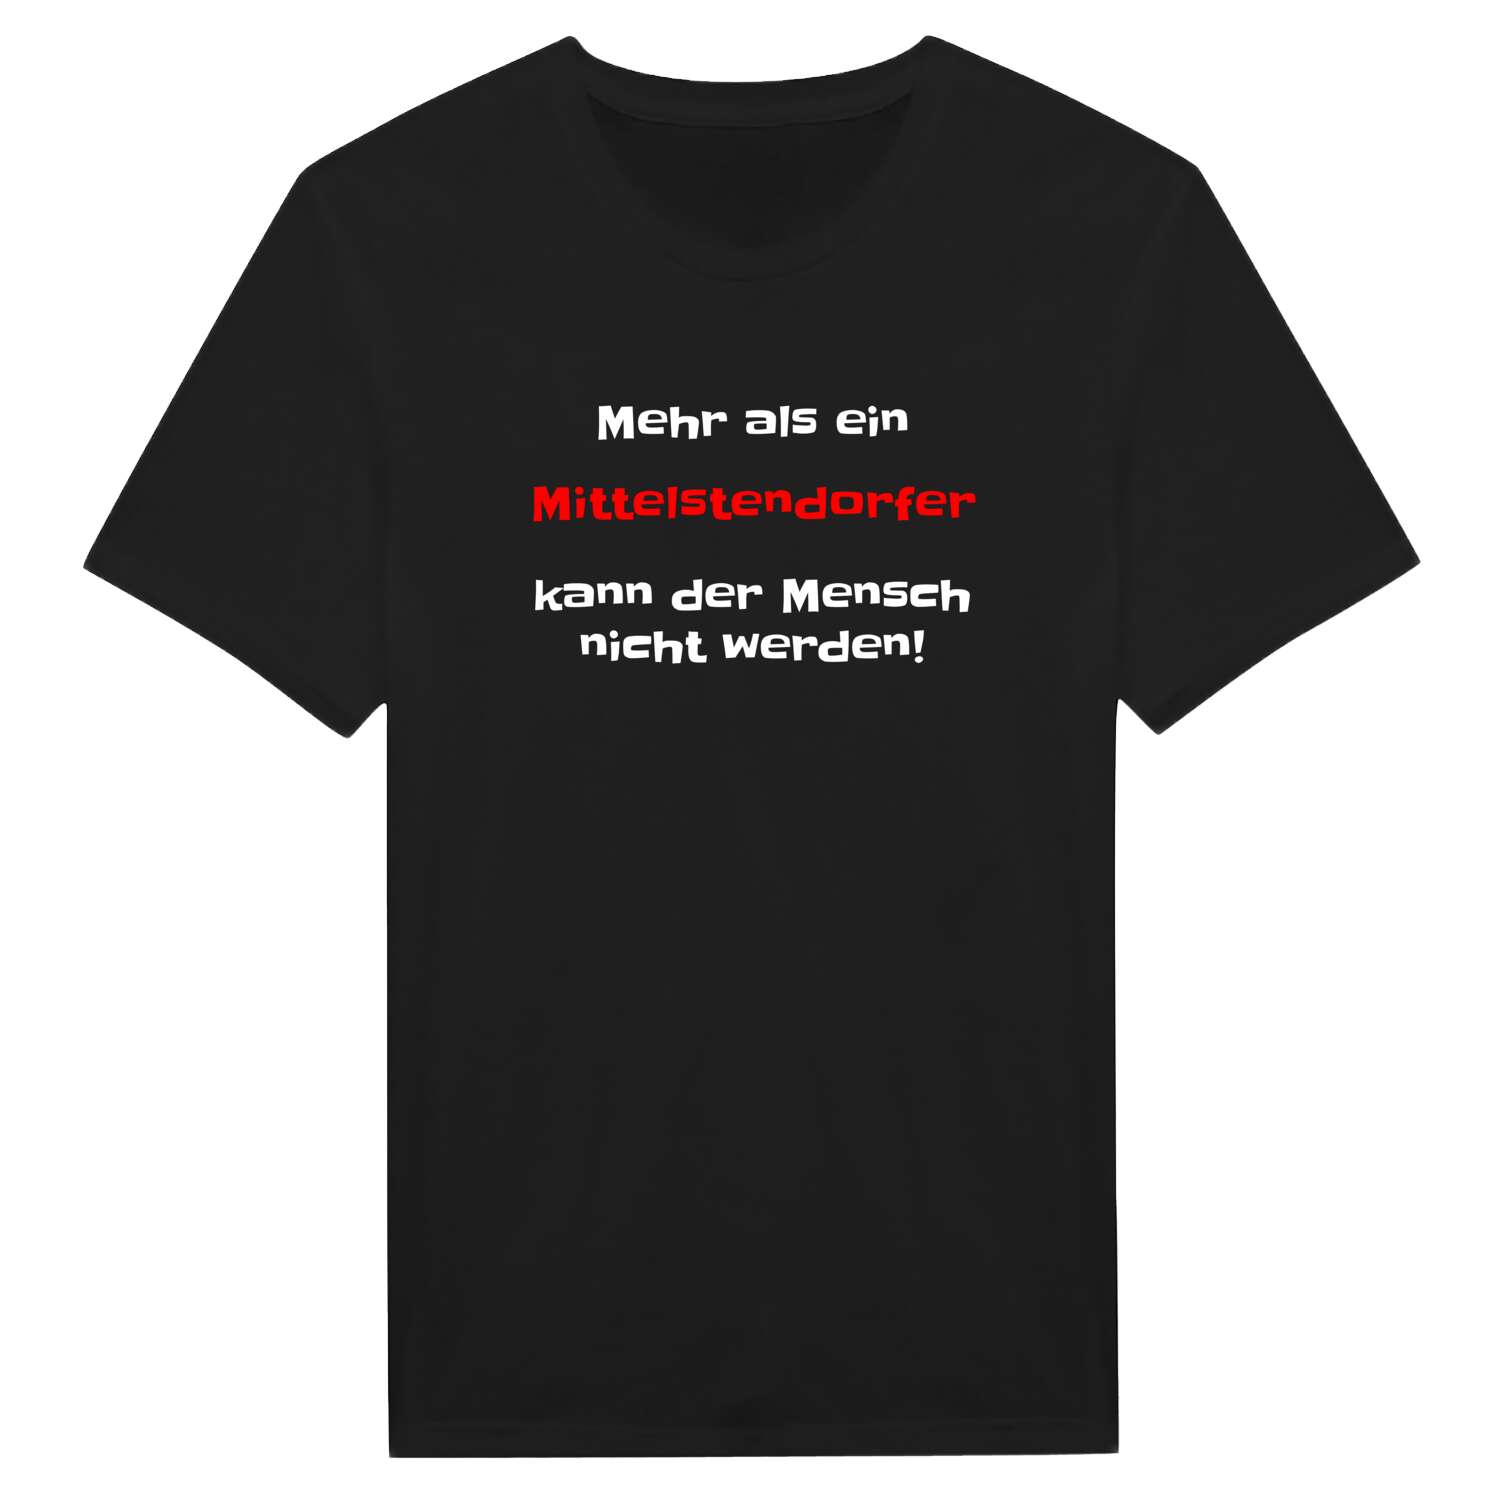 Mittelstendorf T-Shirt »Mehr als ein«